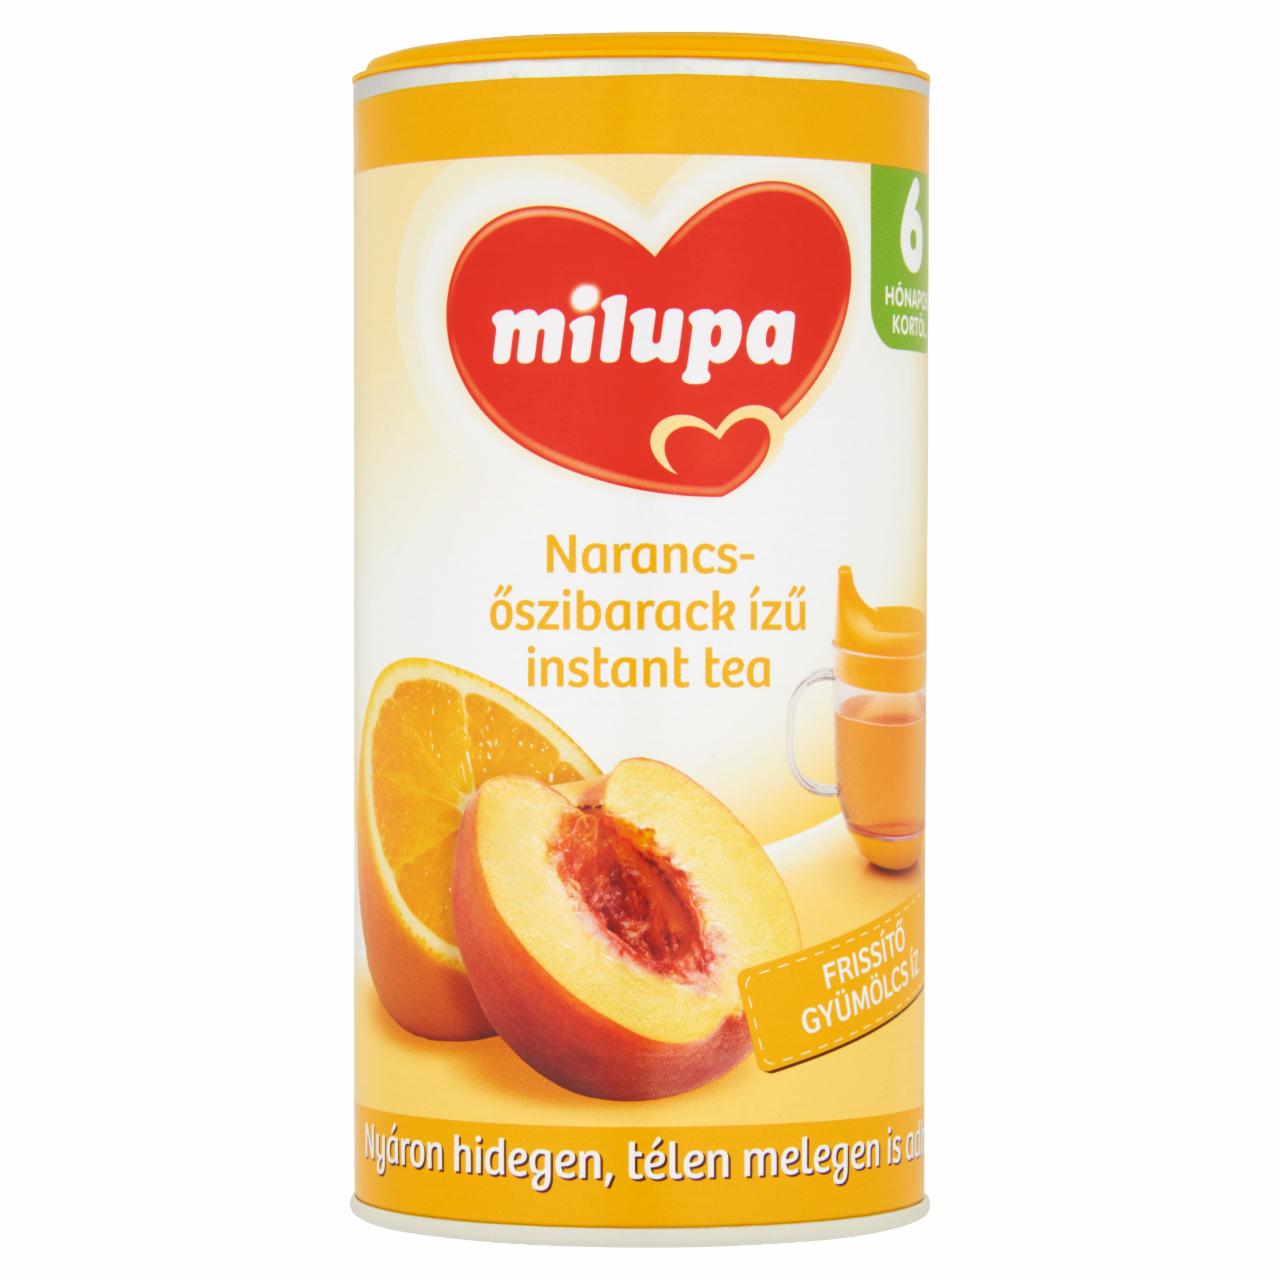 Képek - Milupa narancs- és őszibarack ízű instant tea 6 hónapos kortól 200 g